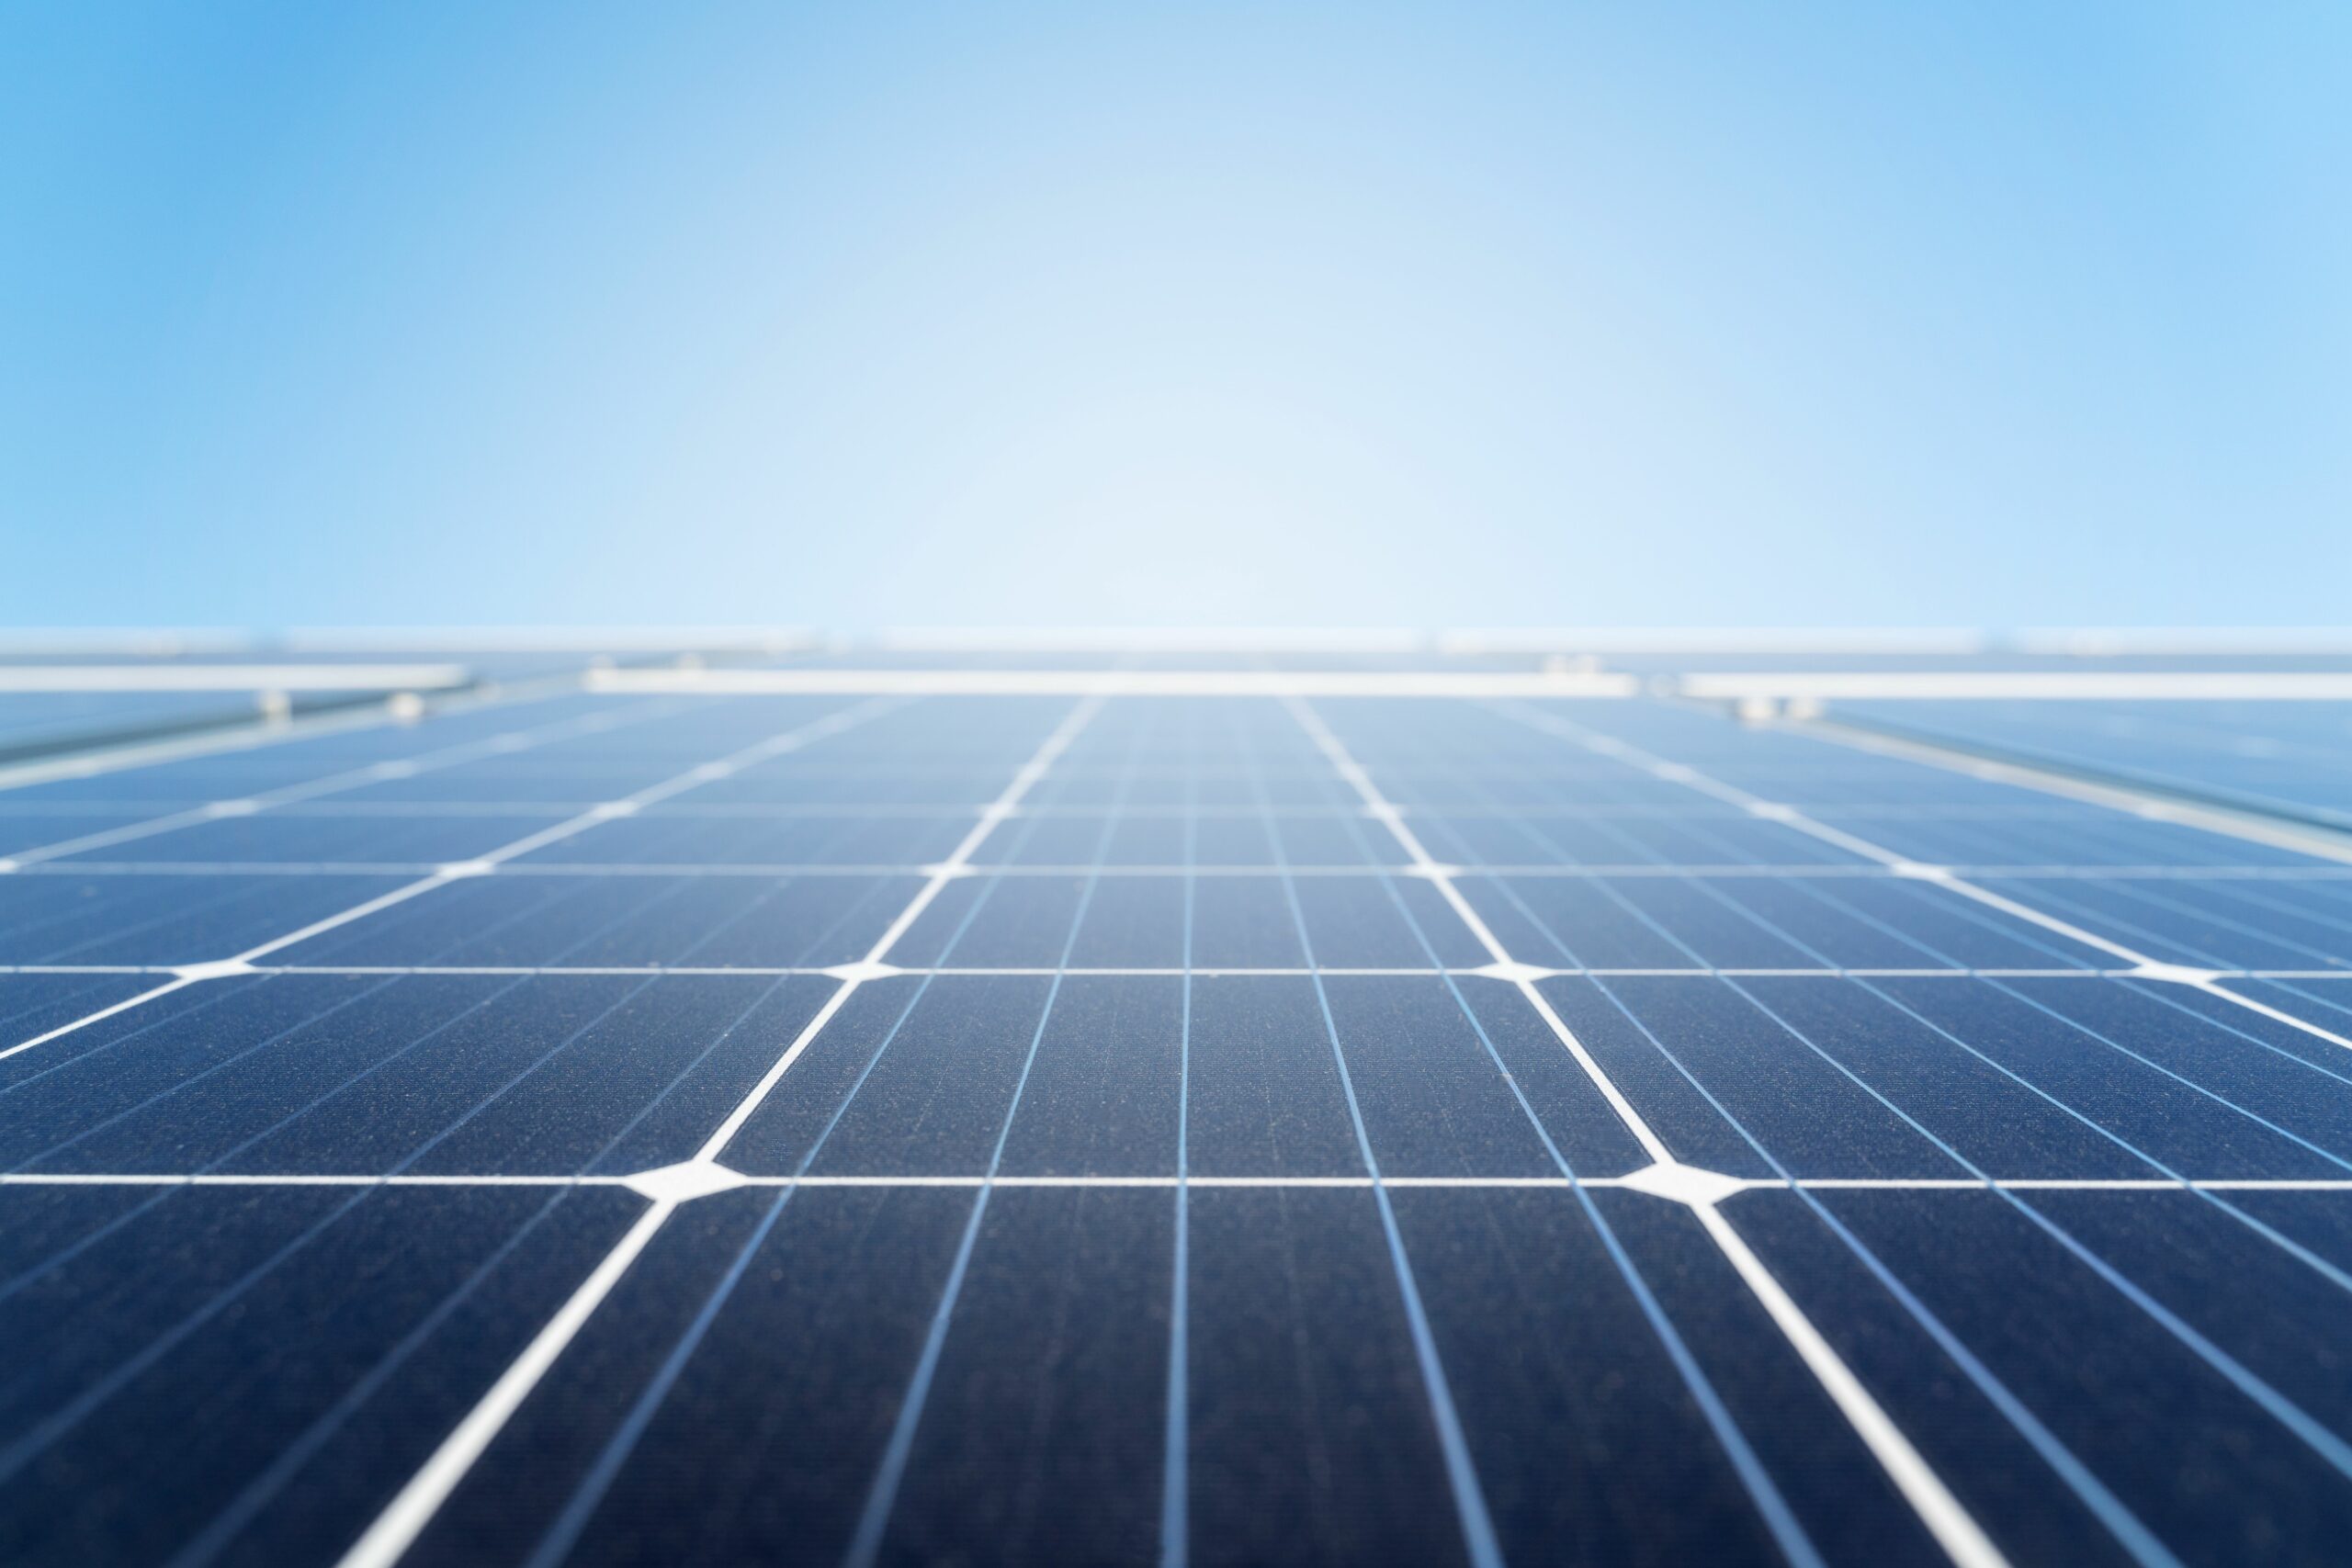 Conheça as novas tecnologias para células fotovoltaicas